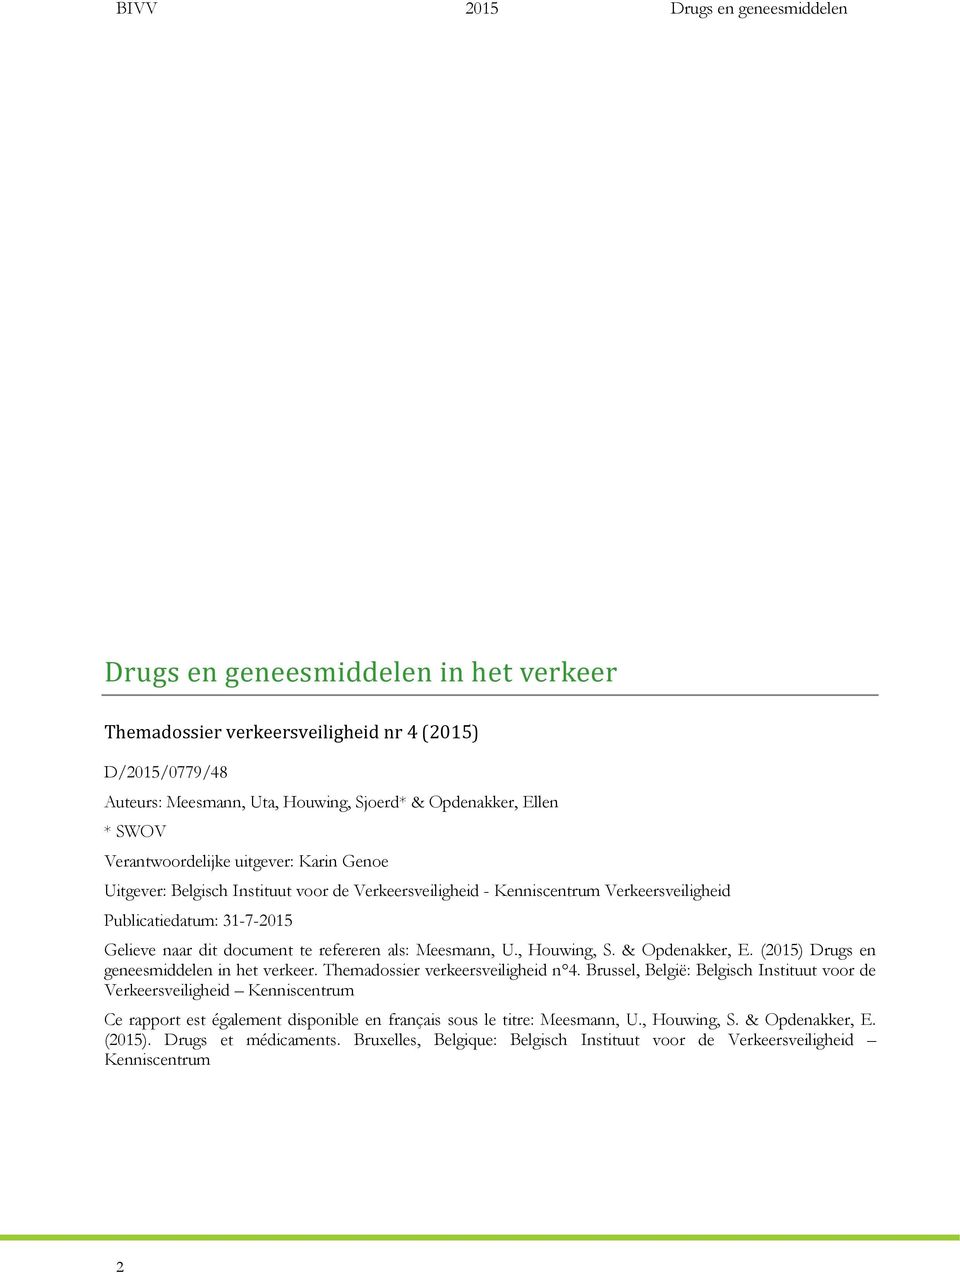 , Houwing, S. & Opdenakker, E. (2015) Drugs en geneesmiddelen in het verkeer. Themadossier verkeersveiligheid n 4.